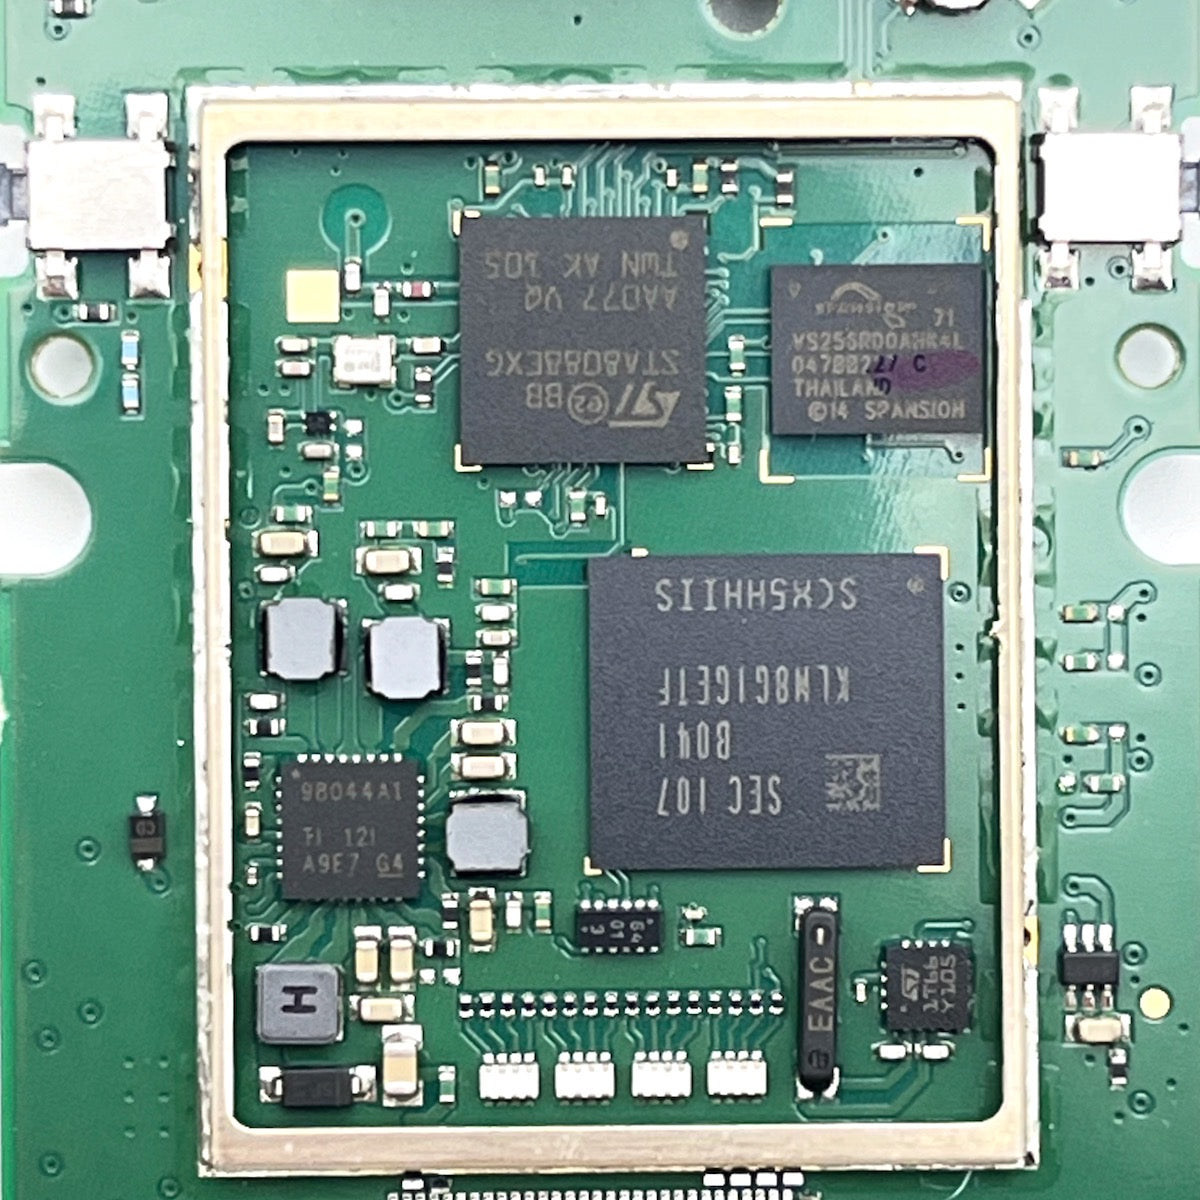 PCB Mainboard for Garmin eTrex 22x genuine part repair 20x